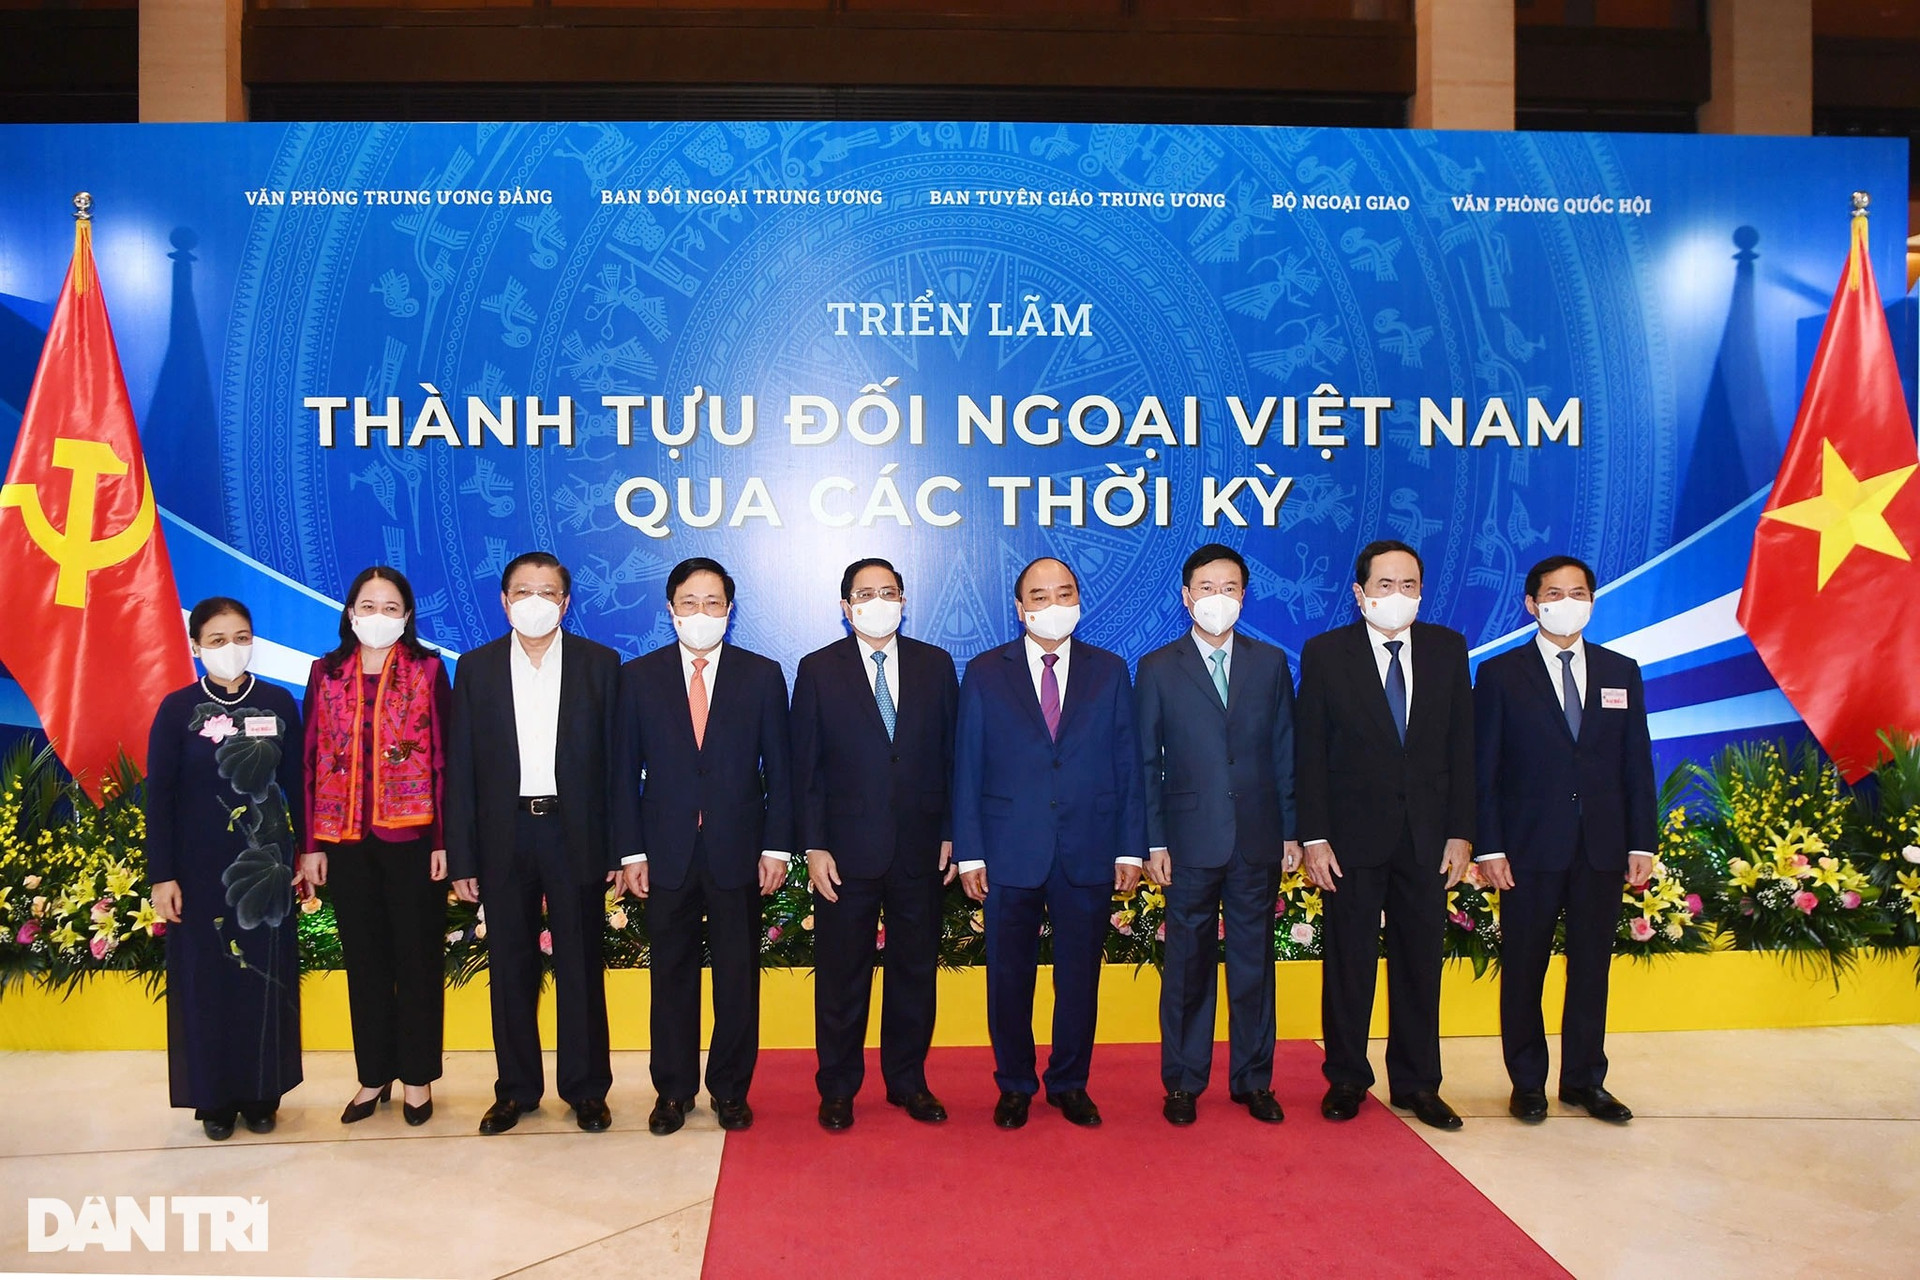 Toàn cảnh Hội nghị Đối ngoại toàn quốc khai mạc trọng thể tại Hà Nội - 13